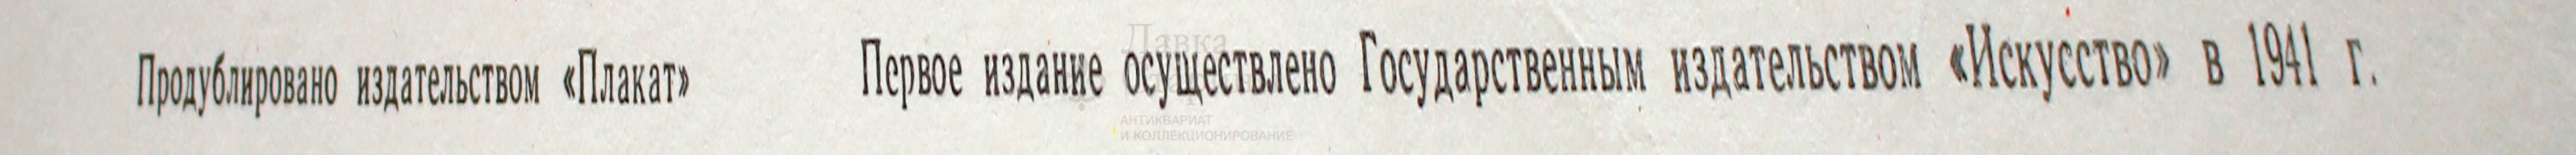 Советский агитационный плакат «Отстоим Москву!», 1941 г., репринт 1970-е